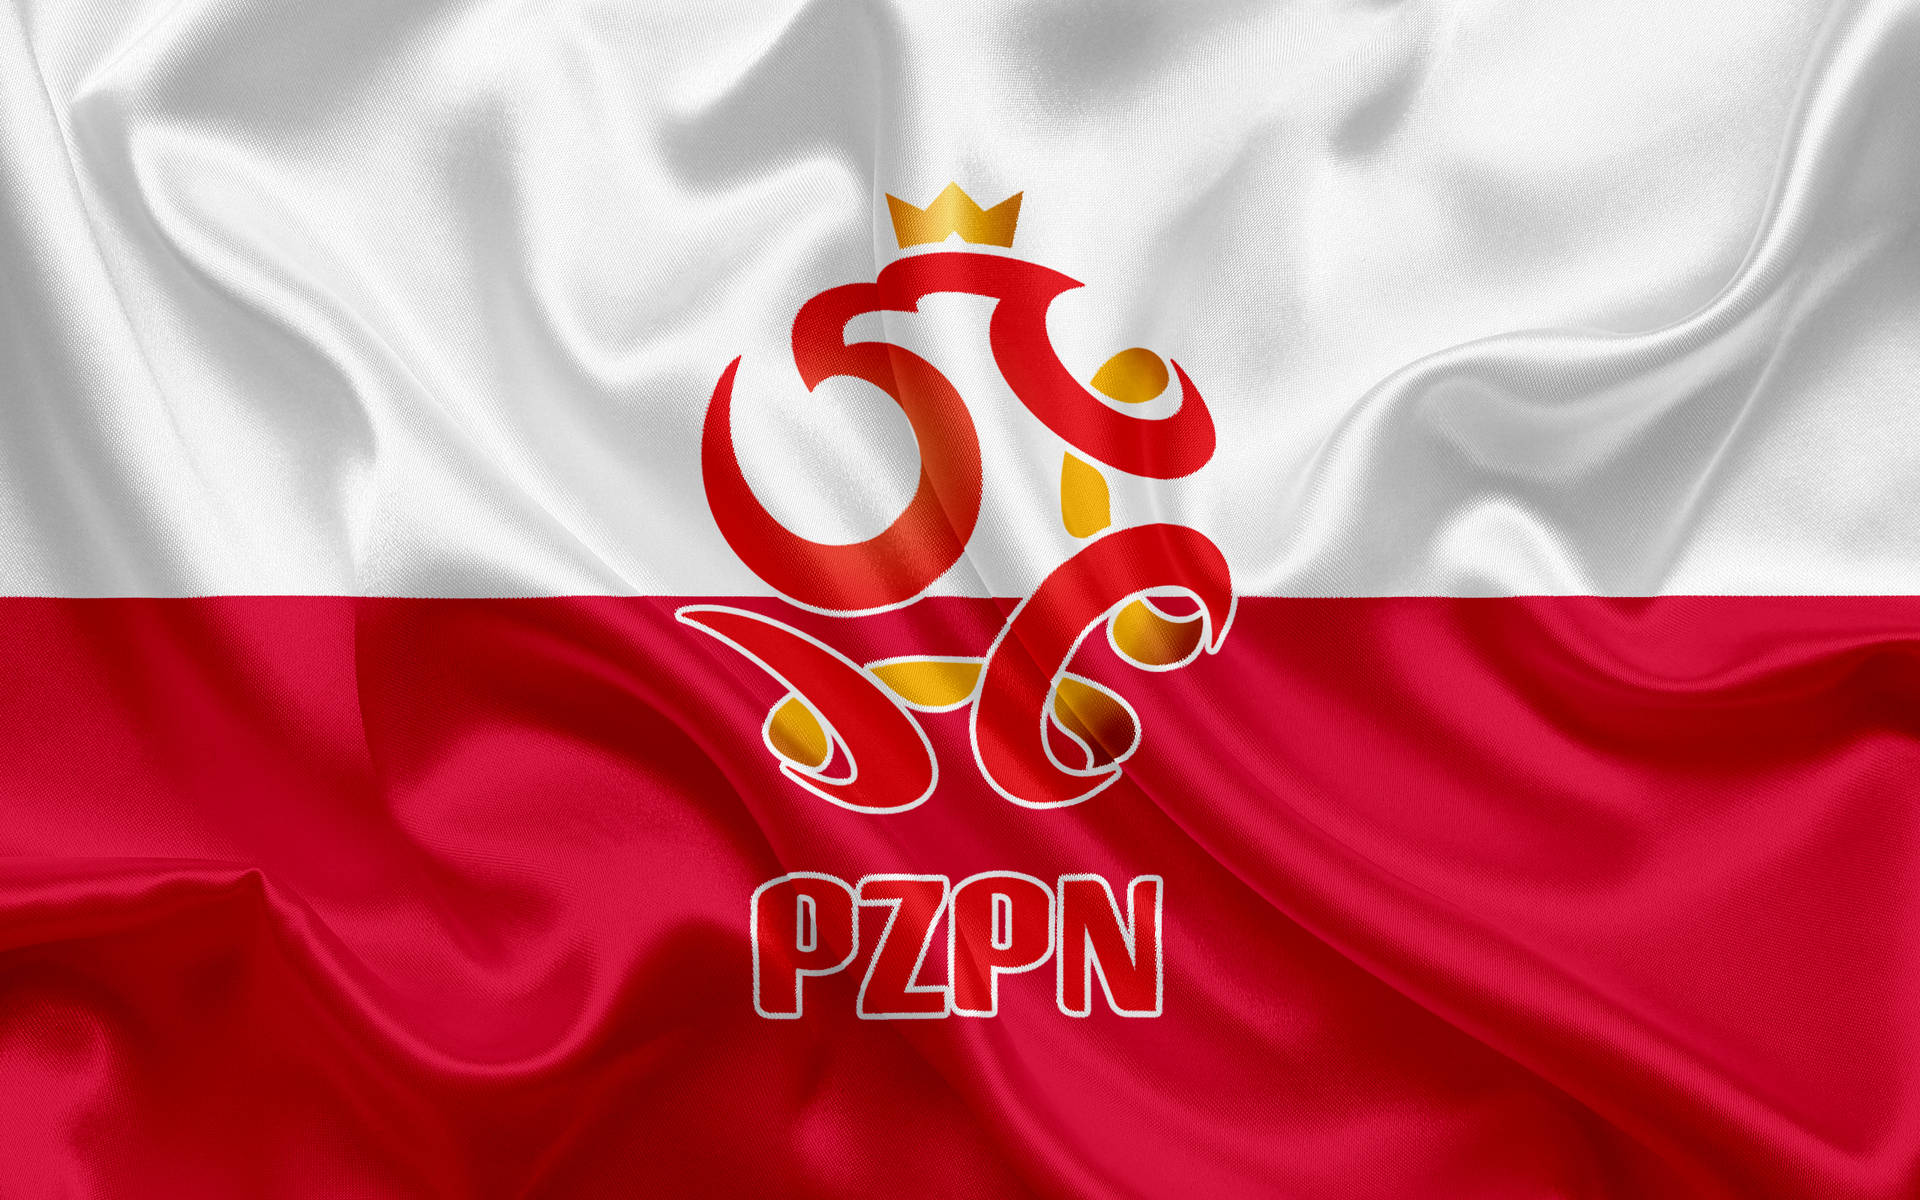 Papelde Parede Brilhante Da Seleção Nacional De Futebol Da Polônia Em Formato Digital. Papel de Parede